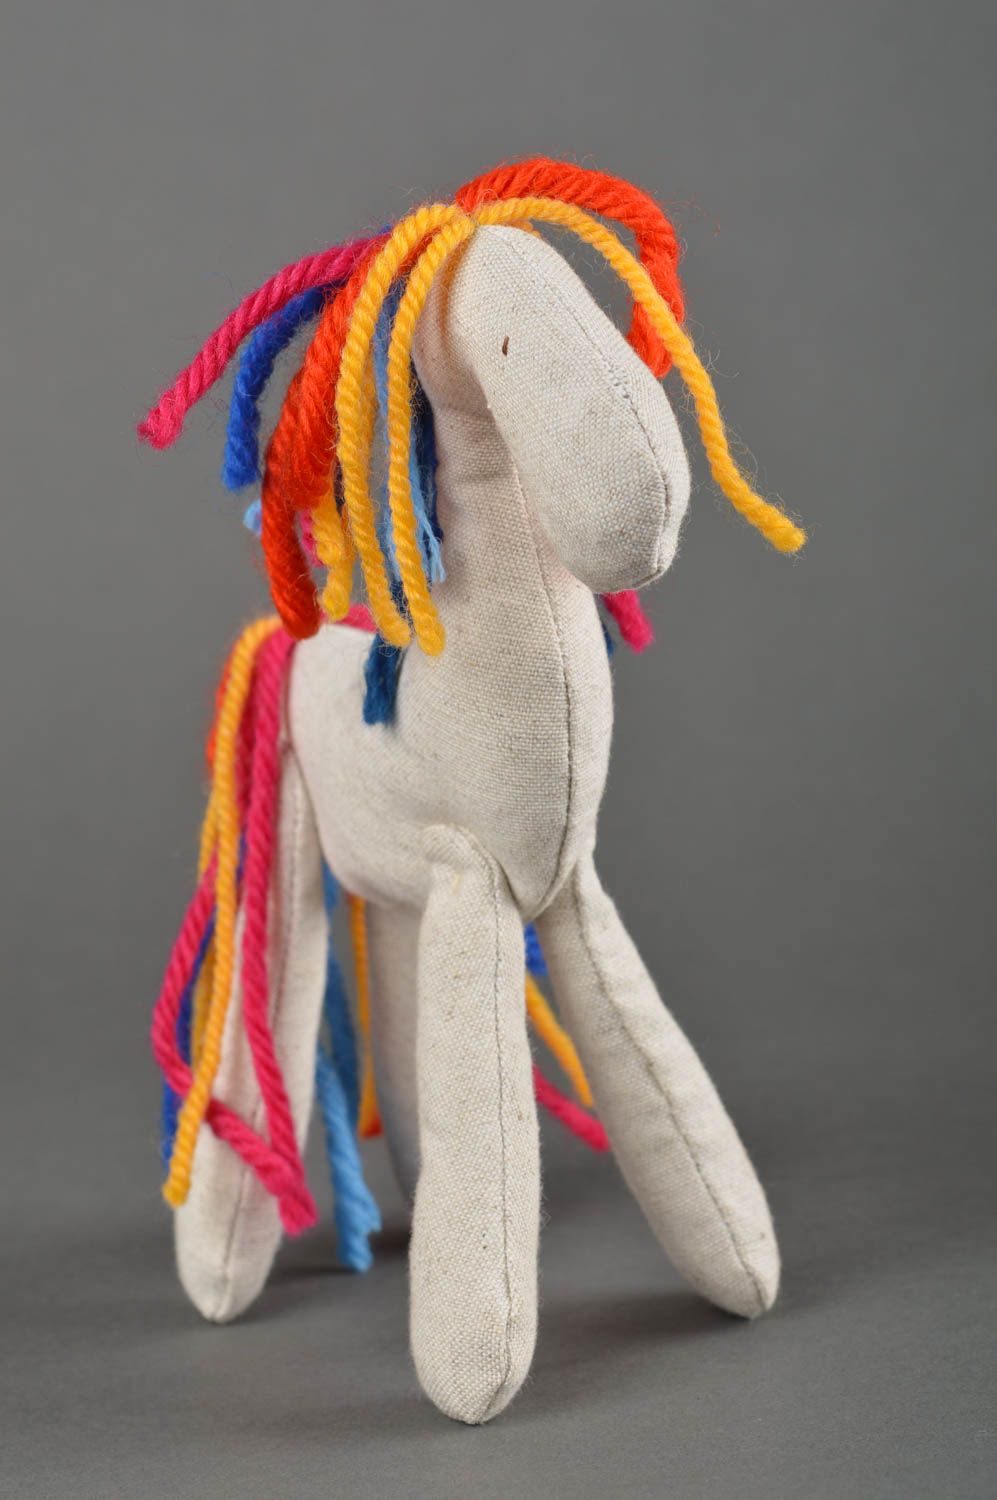 Игрушка лошадка ручной работы детская игрушка из ткани мягкая игрушка красивая фото 2